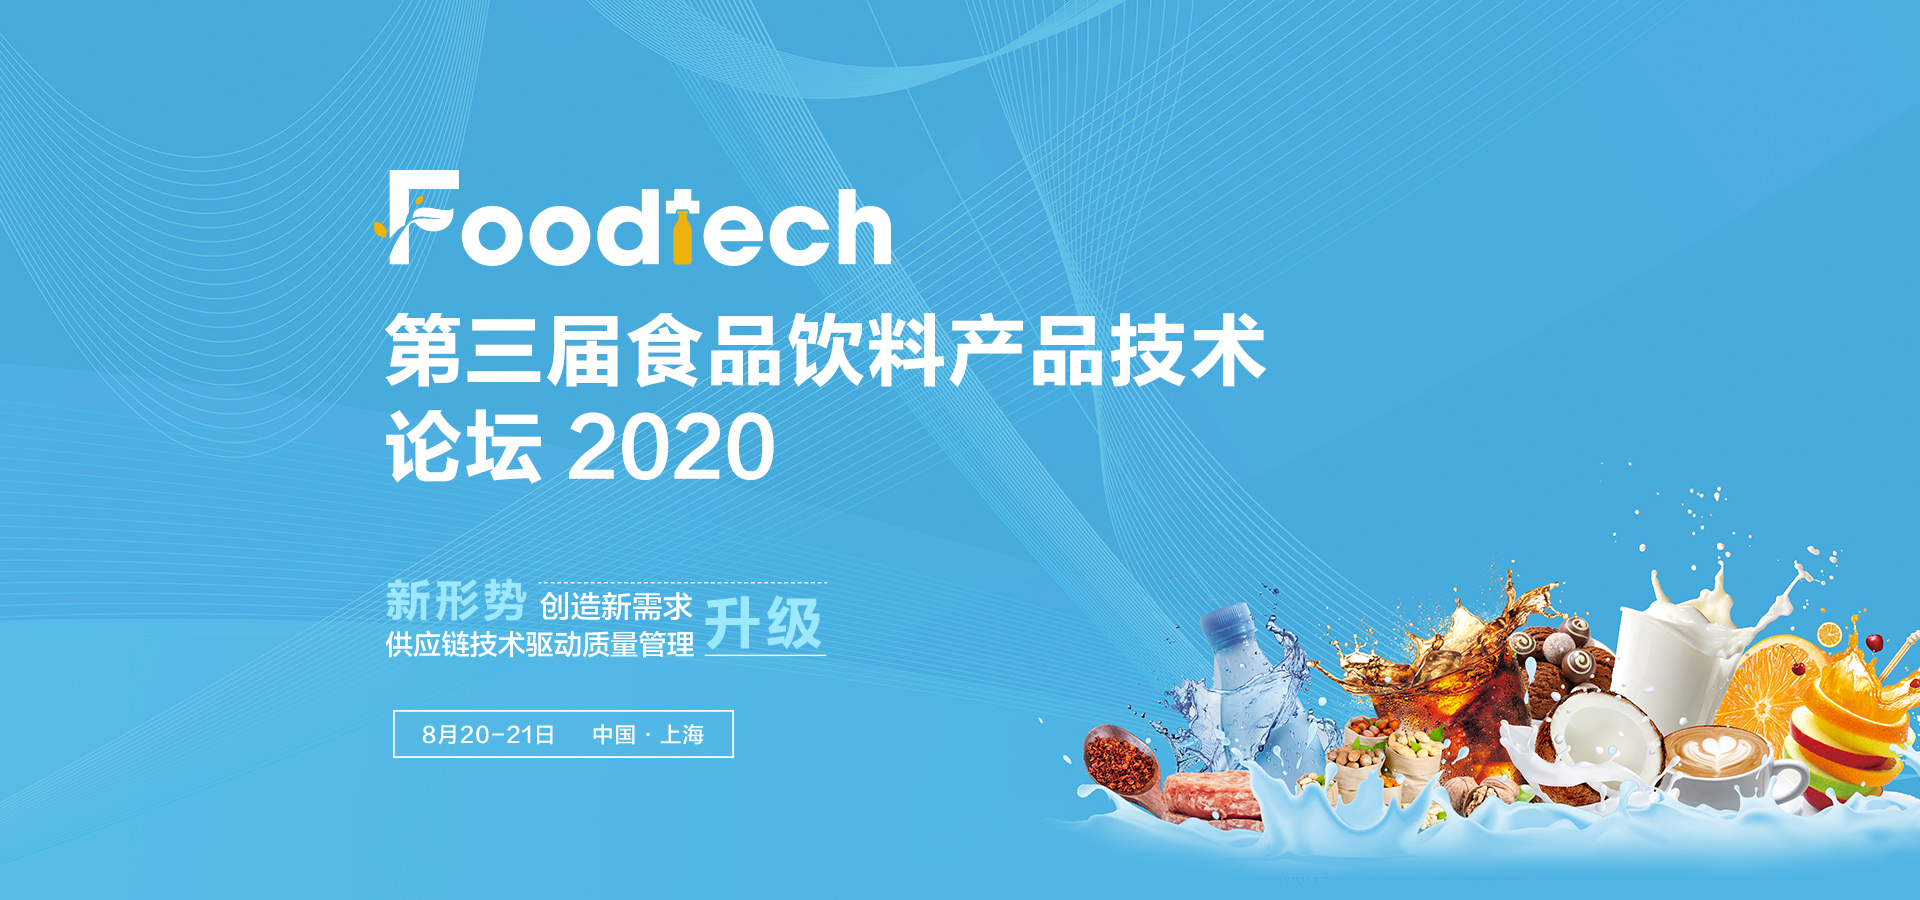 炎炎夏日，火热来袭！Foodtech 2020 第三届食品饮料产品技术论坛夏季开幕